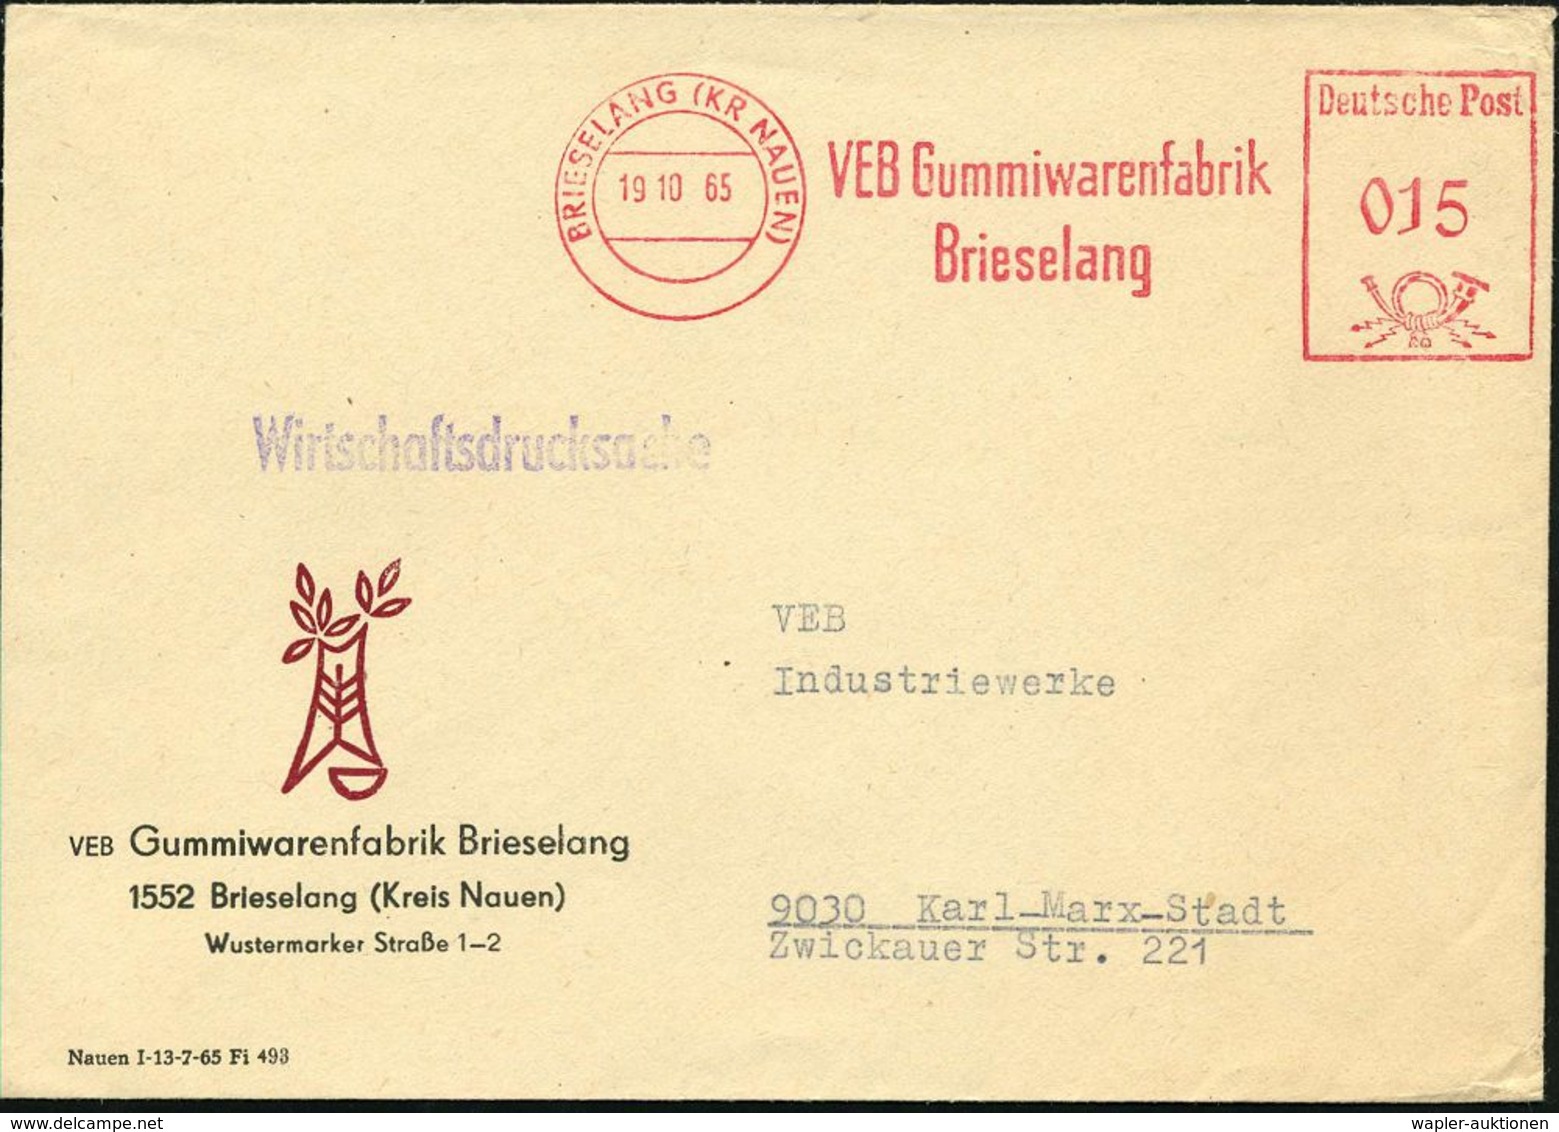 GUMMI / KAUTSCHUK : BRIESELANG (KR NAUEN)/ VEB Gummiwarenfabrik 1965 (19.10.) AFS Klar Auf Firmen-Bf.: VEB Gummiwarenfab - Chimie